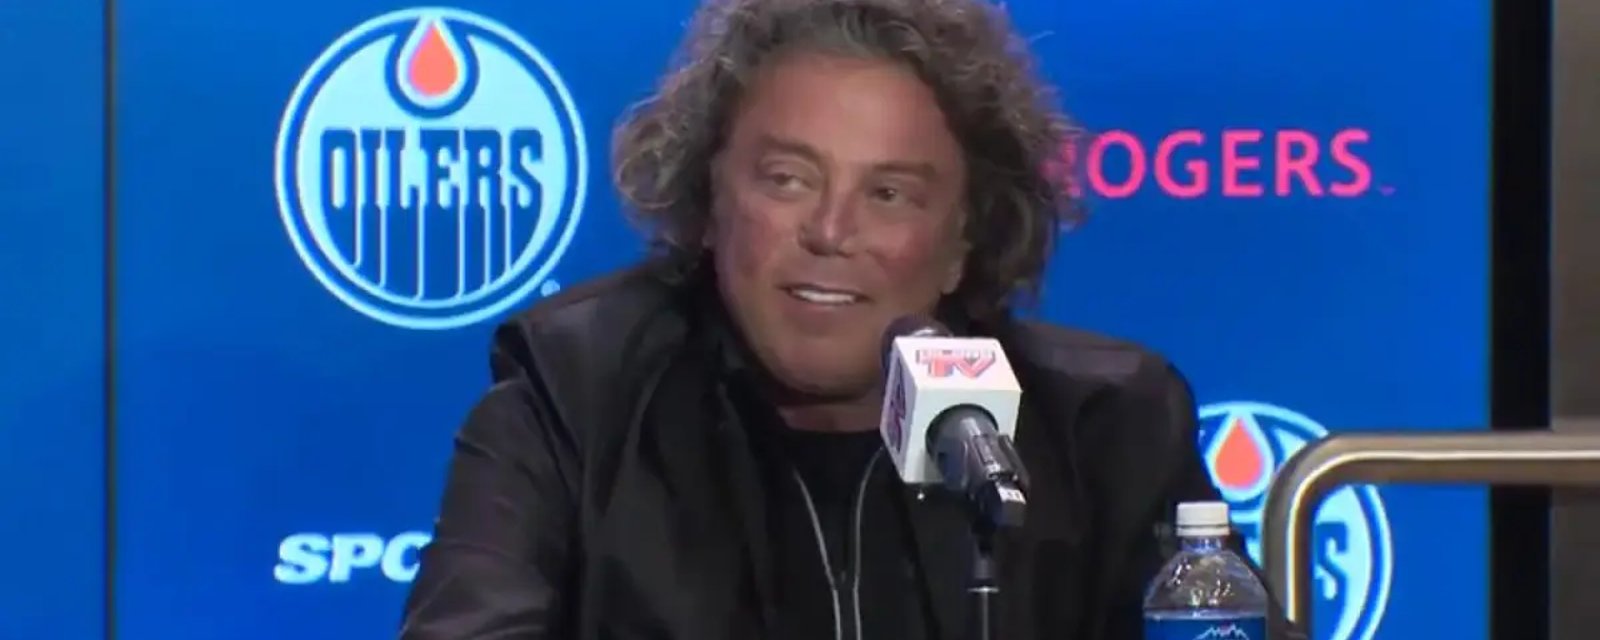 Le propriétaire des Oilers d'Edmonton accusé d'avoir payé pour des relations sexuelles avec une mineure